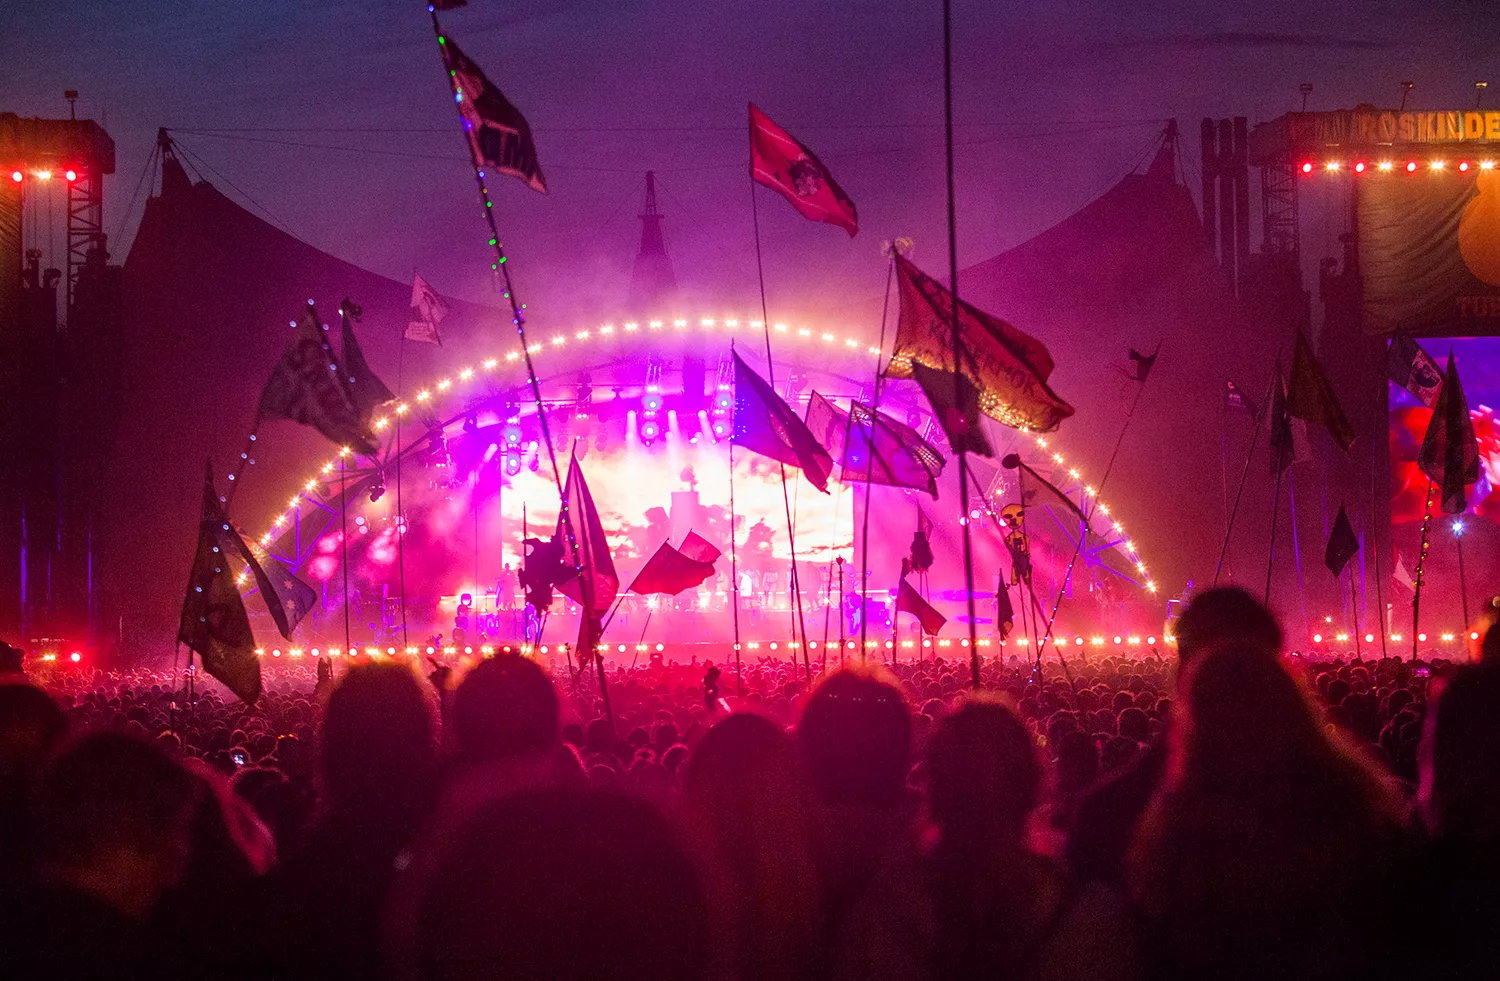 Roskilde Festival om fremtiden: "Vi vil ikke lade os styre af bekymringer"